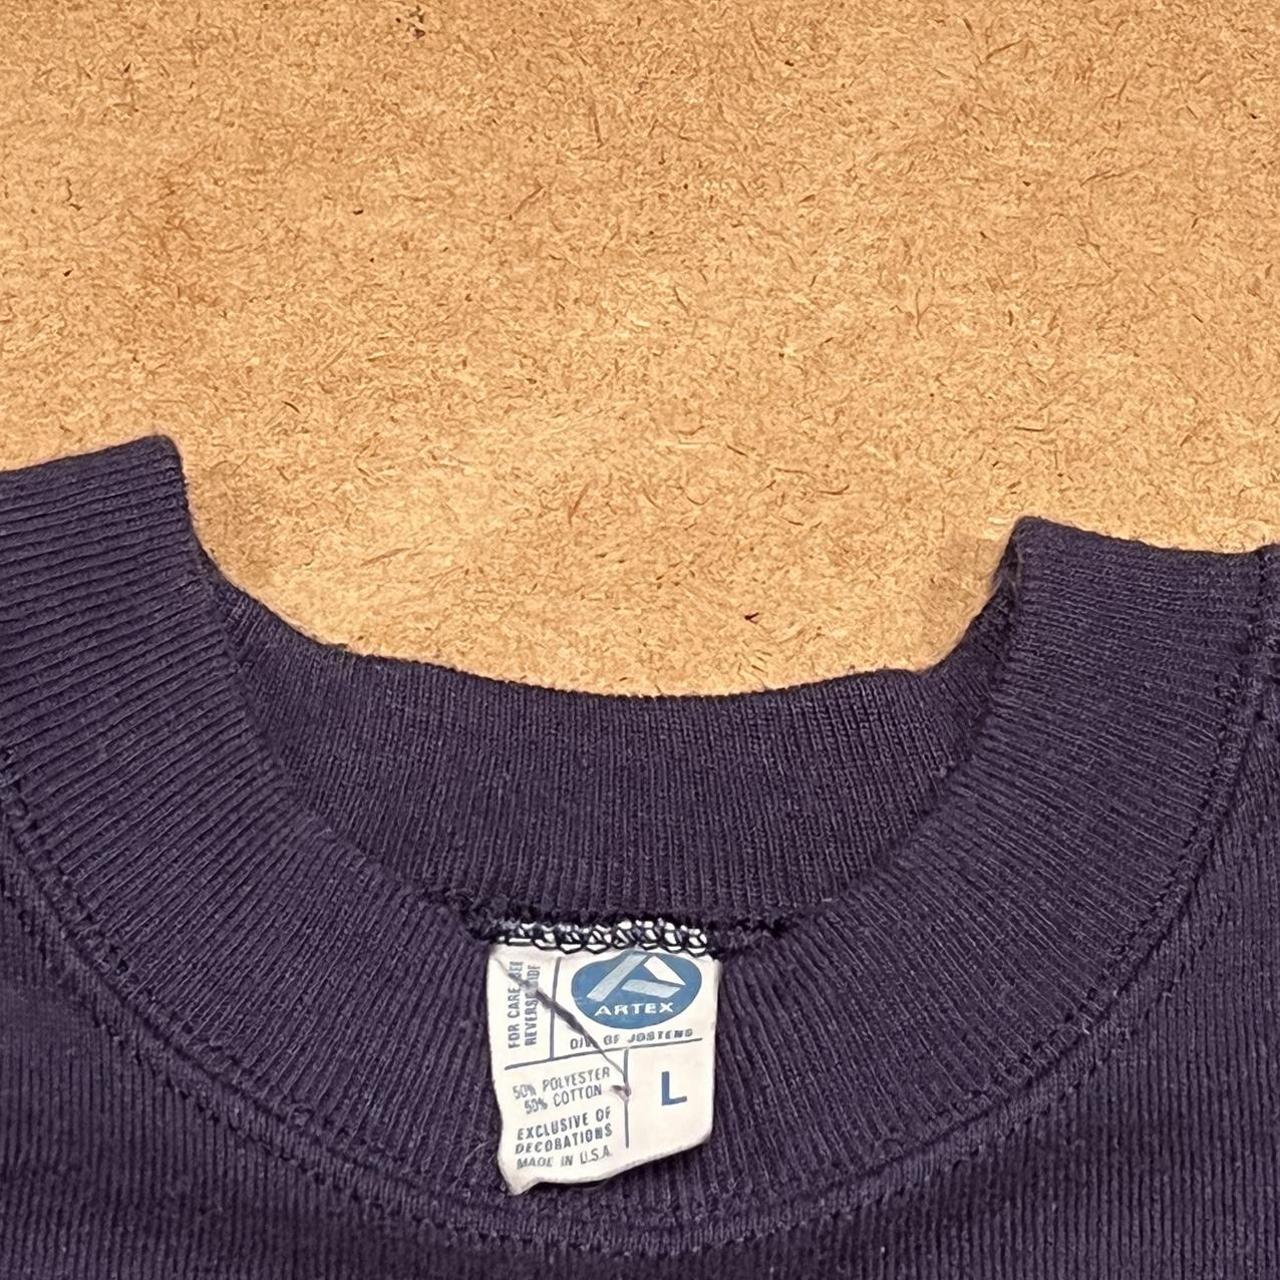 Artek Men's Sweatshirt (3)